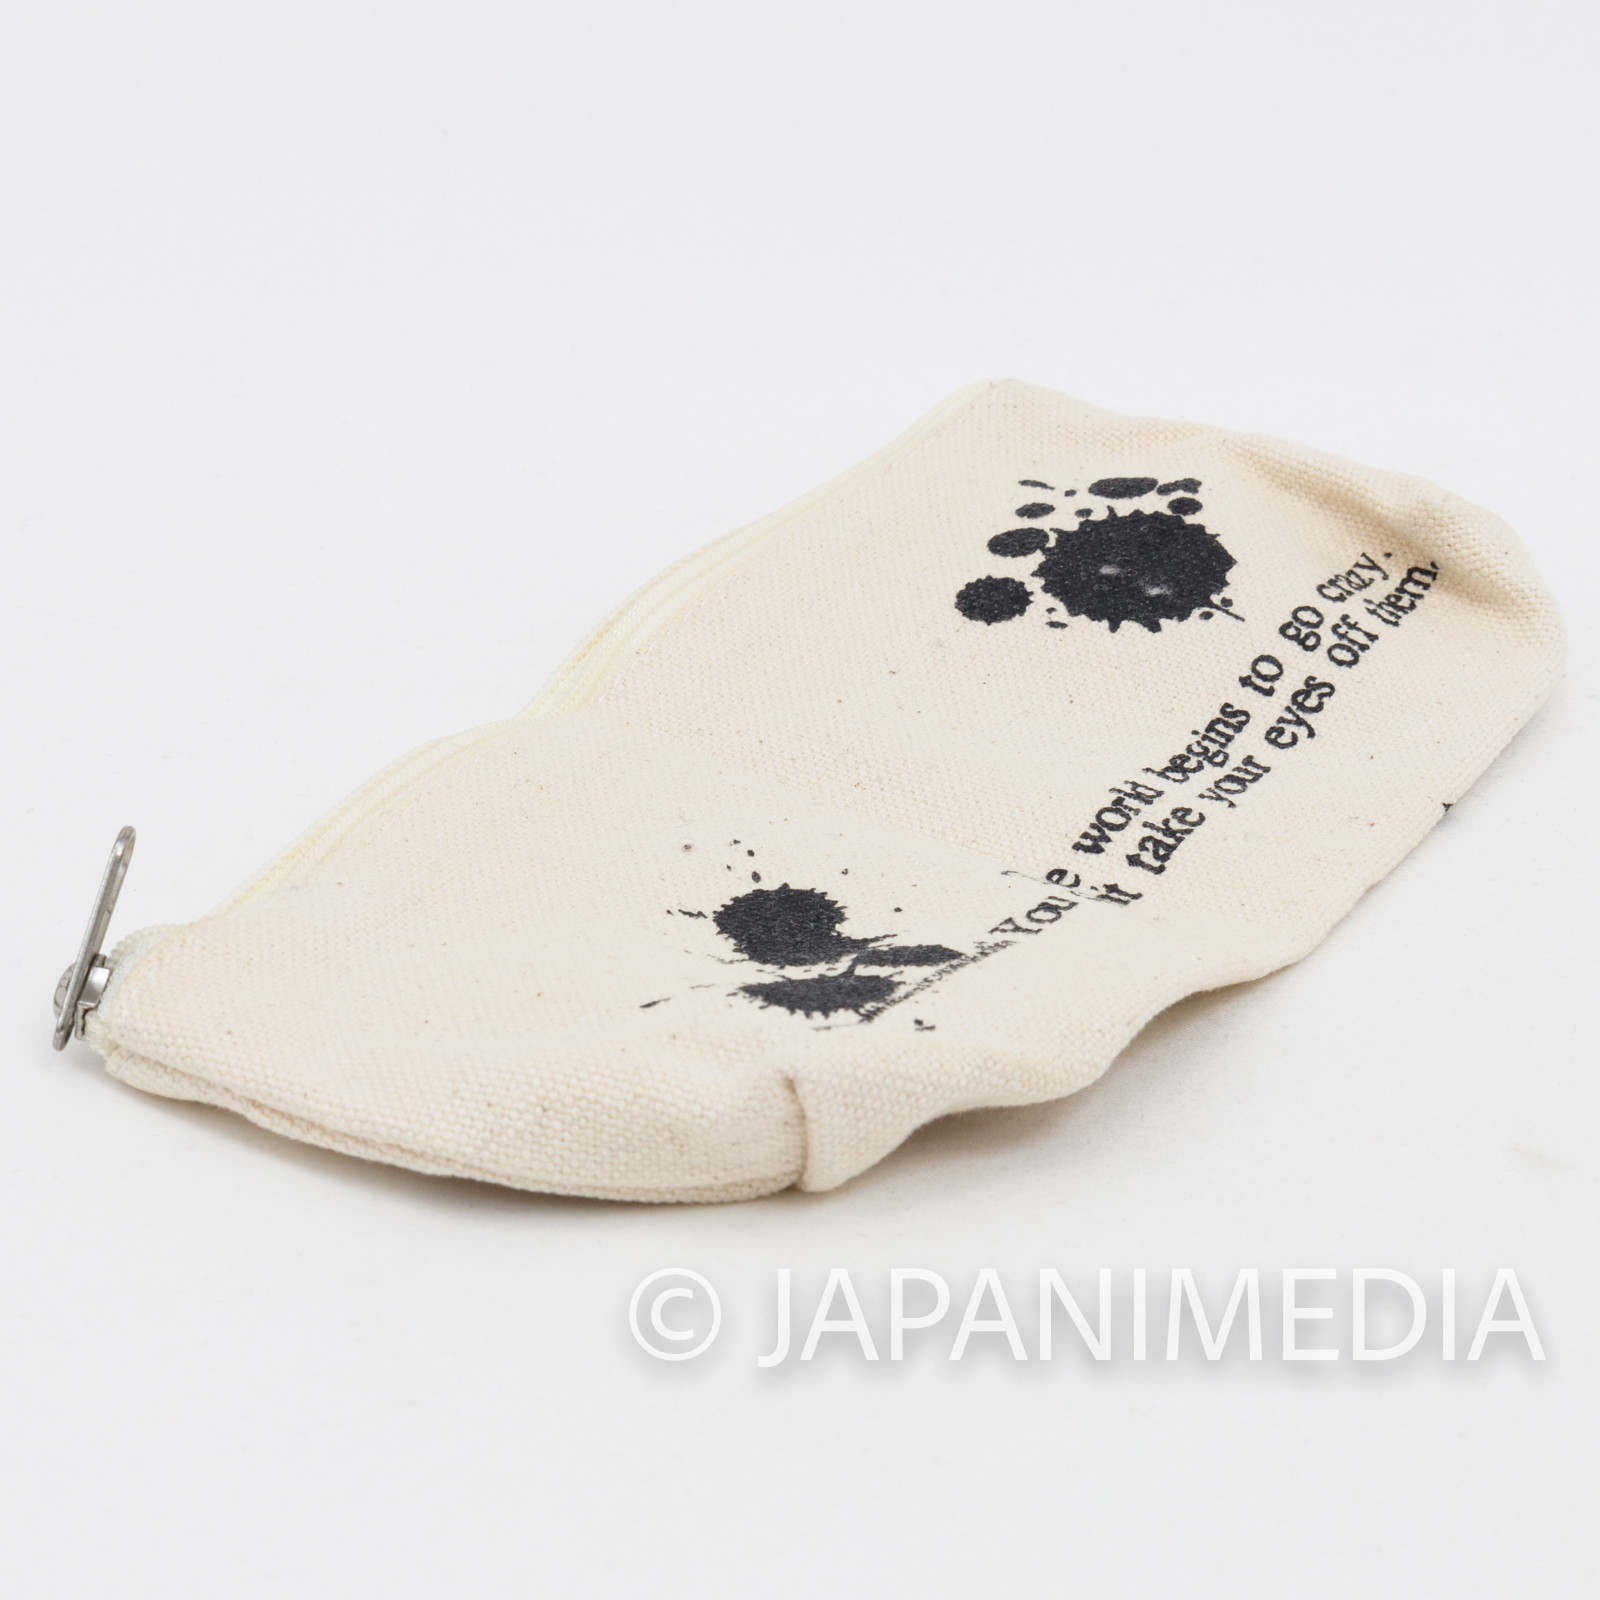 SAIYUKI Reload Soft Pen Case Kazuya Minekura JAPAN ANIME